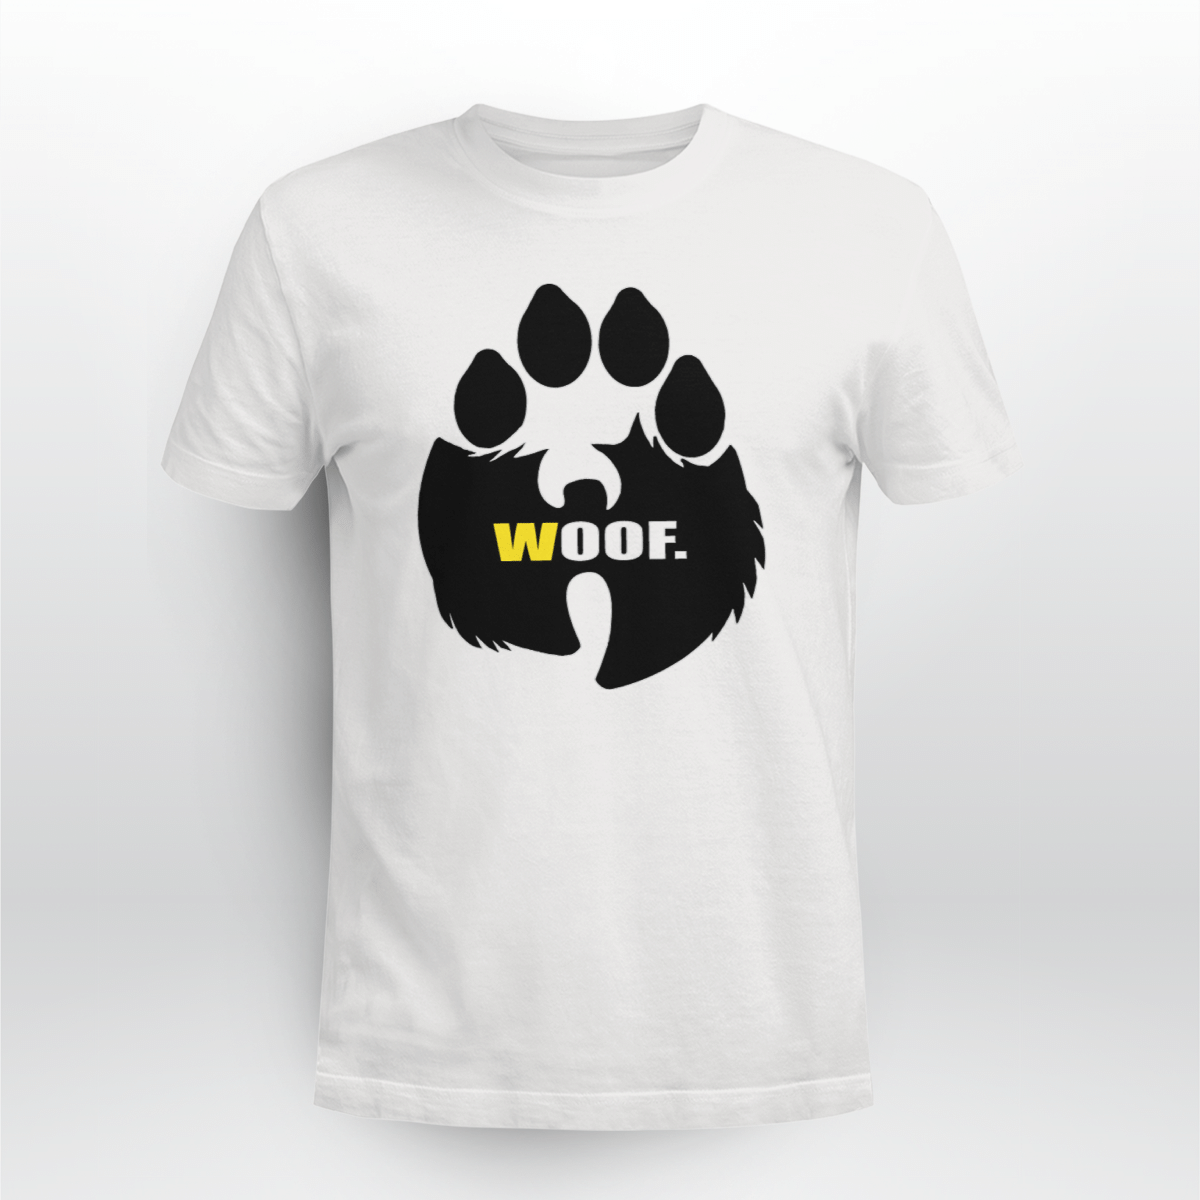 Wu-tang Clan Woof T-shirt